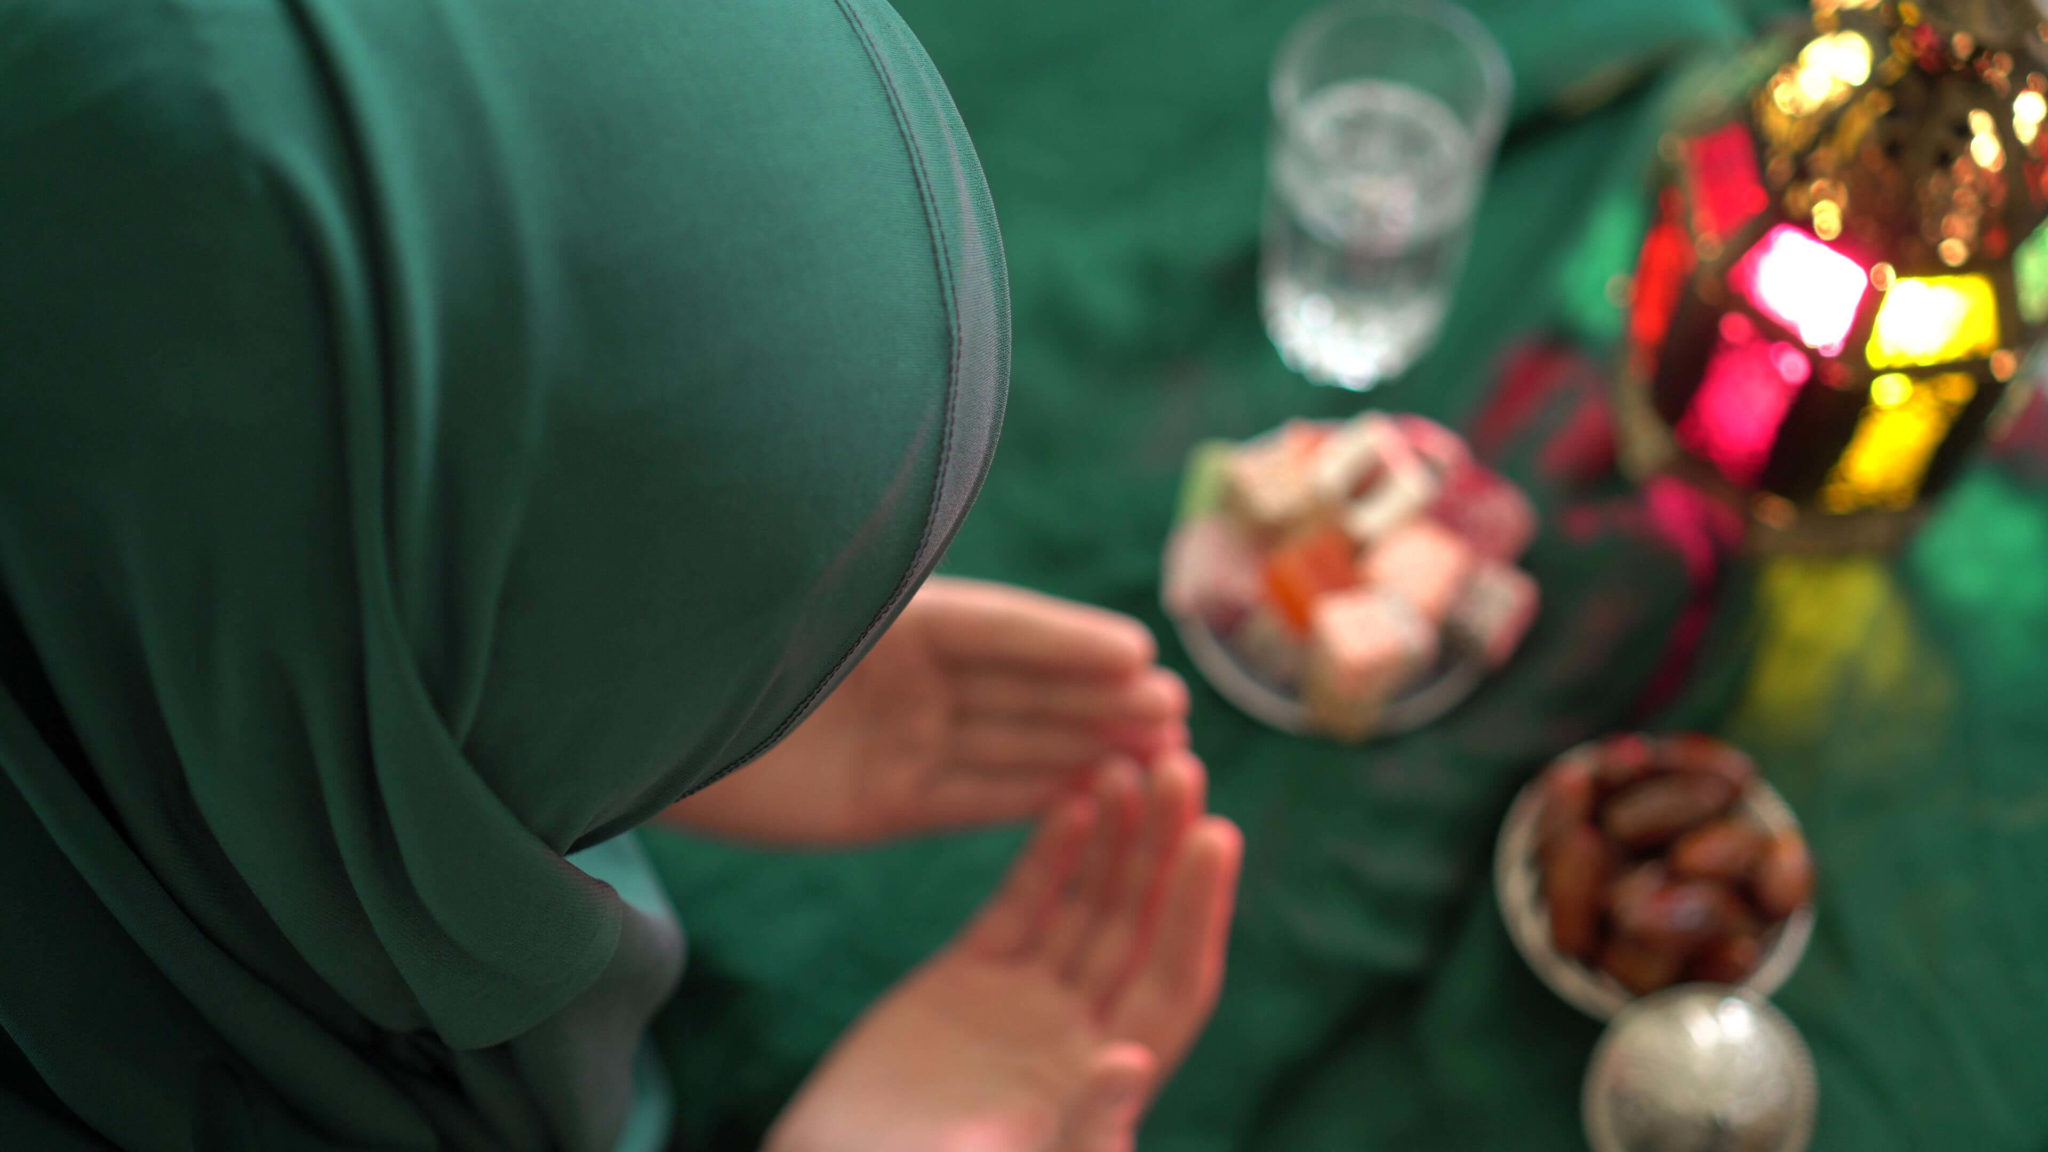 Пост рамадан можно ли заниматься любовью